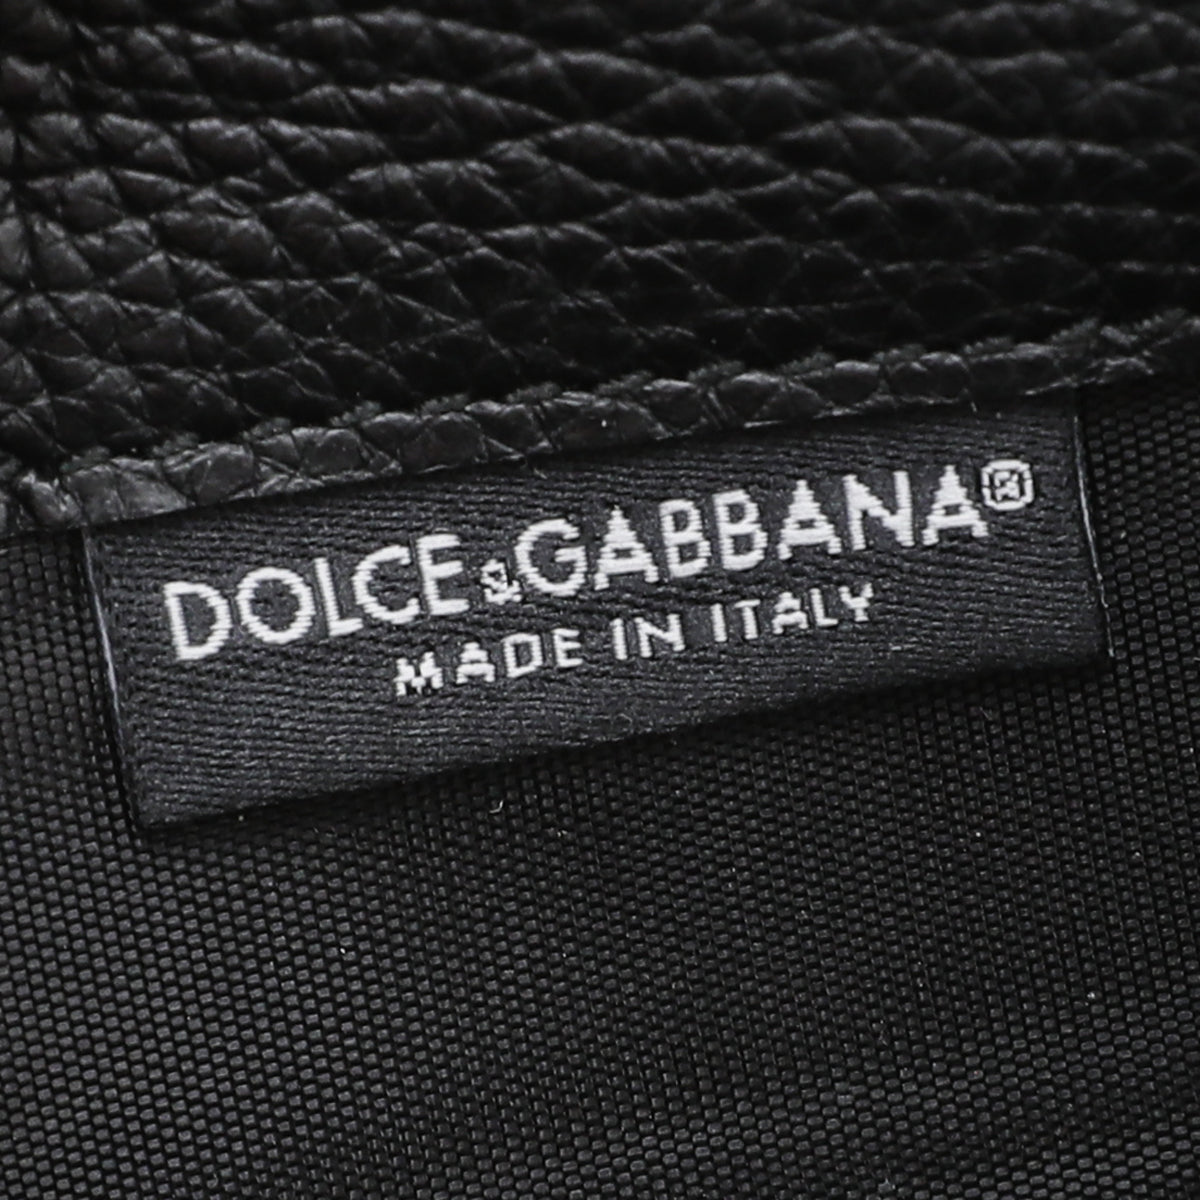 Dolce & Gabbana Black Multicolor Sicily Von Smartphone Embellished Bag